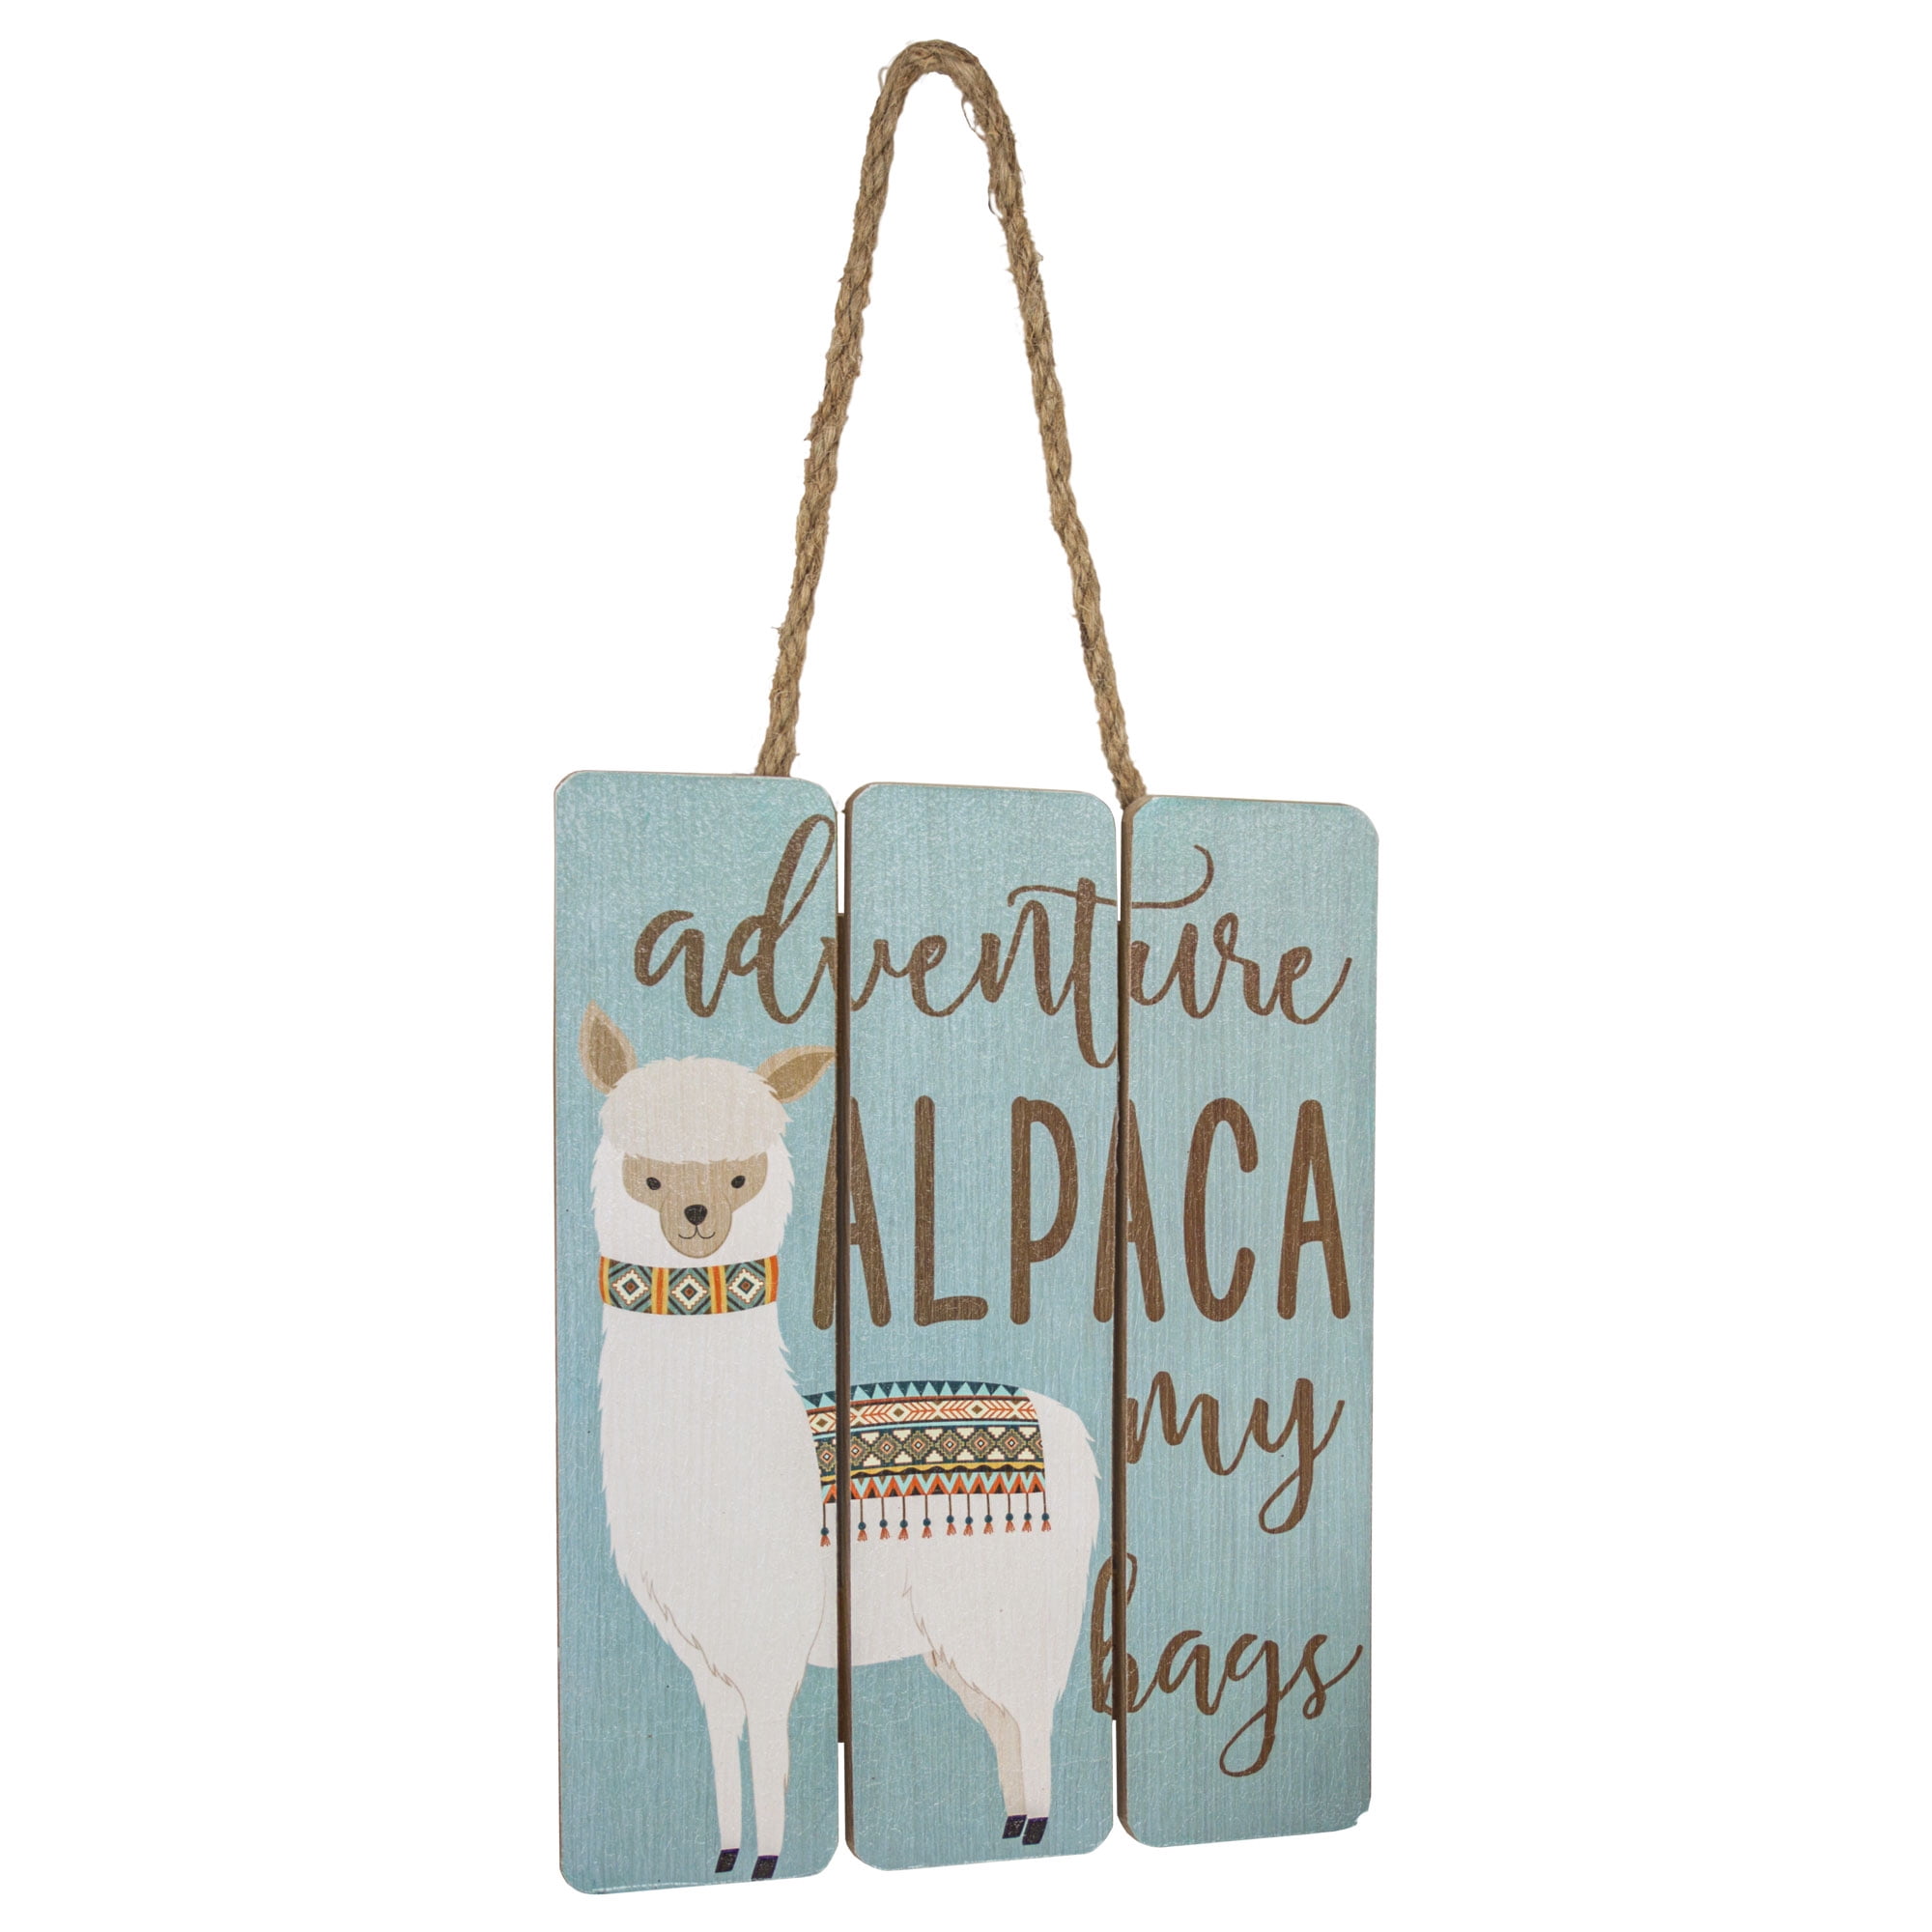 Alpaca my Bag Medium Draw String Project Bag – The Big Wooly Dog